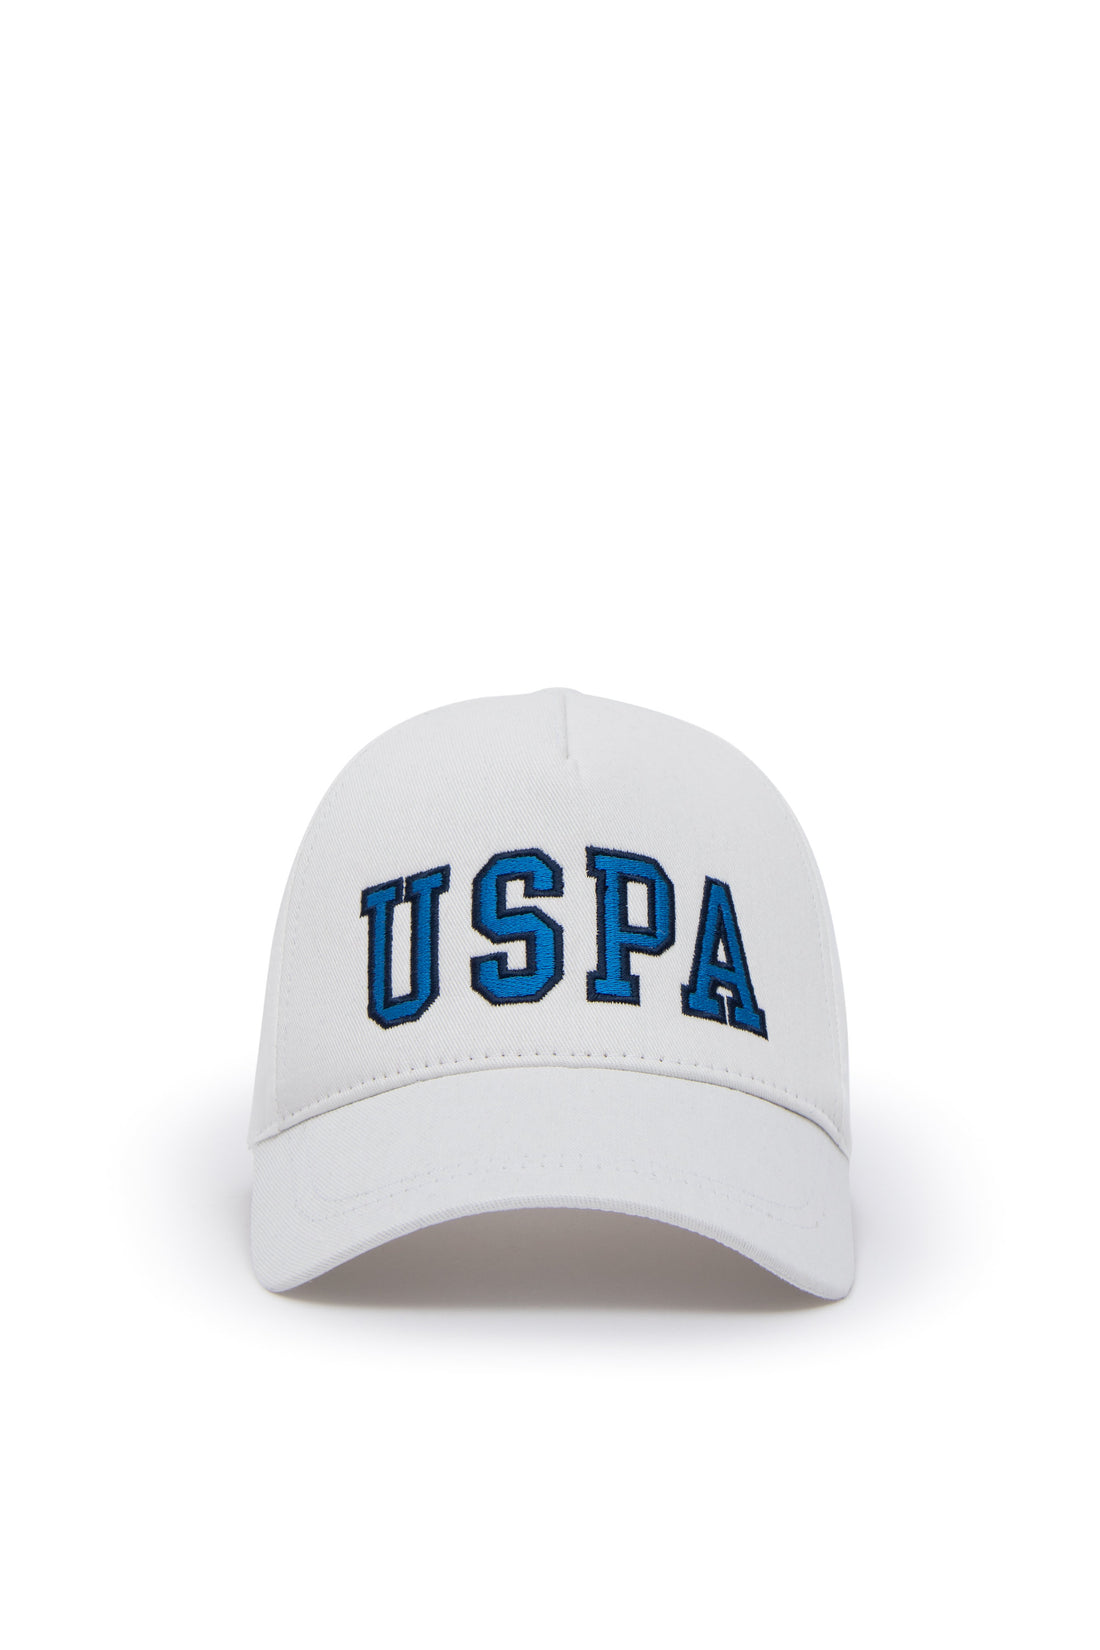 White Hat With Uspa Logo_A082SZ064P01 EDOS-IY24_VR013_02